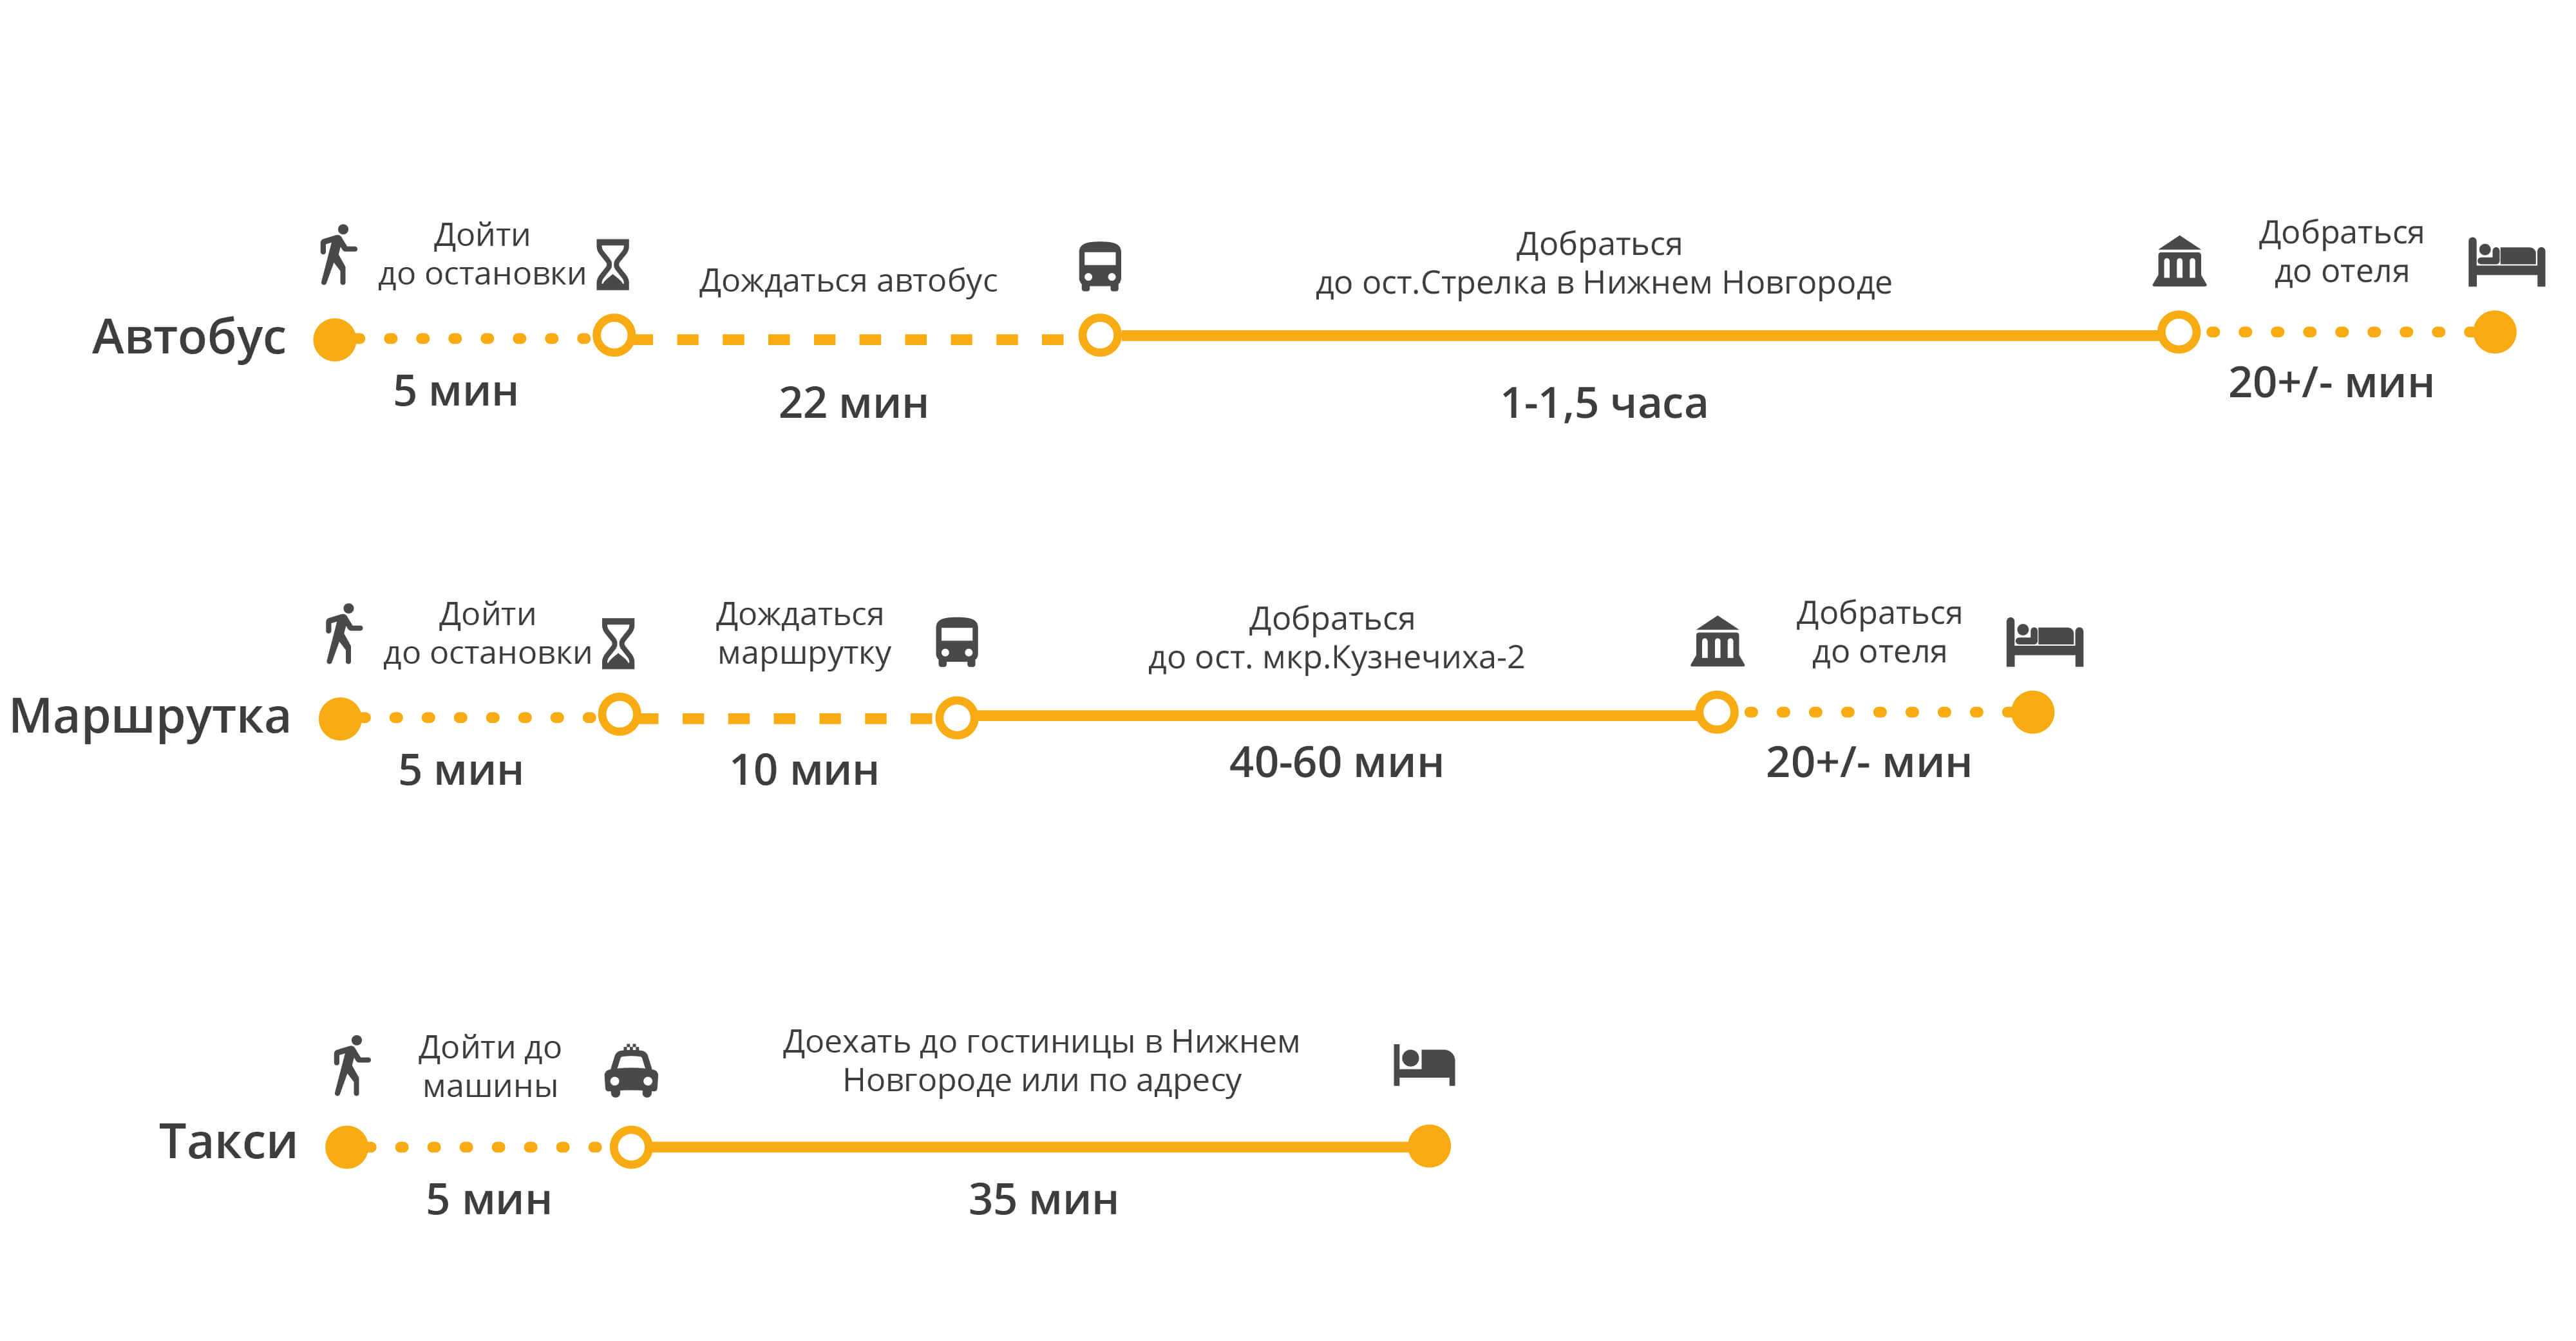 Как добраться из аэропорта сочи в центр города: на автобусе, поезде, такси, личном транспорте, с помощью трансфера